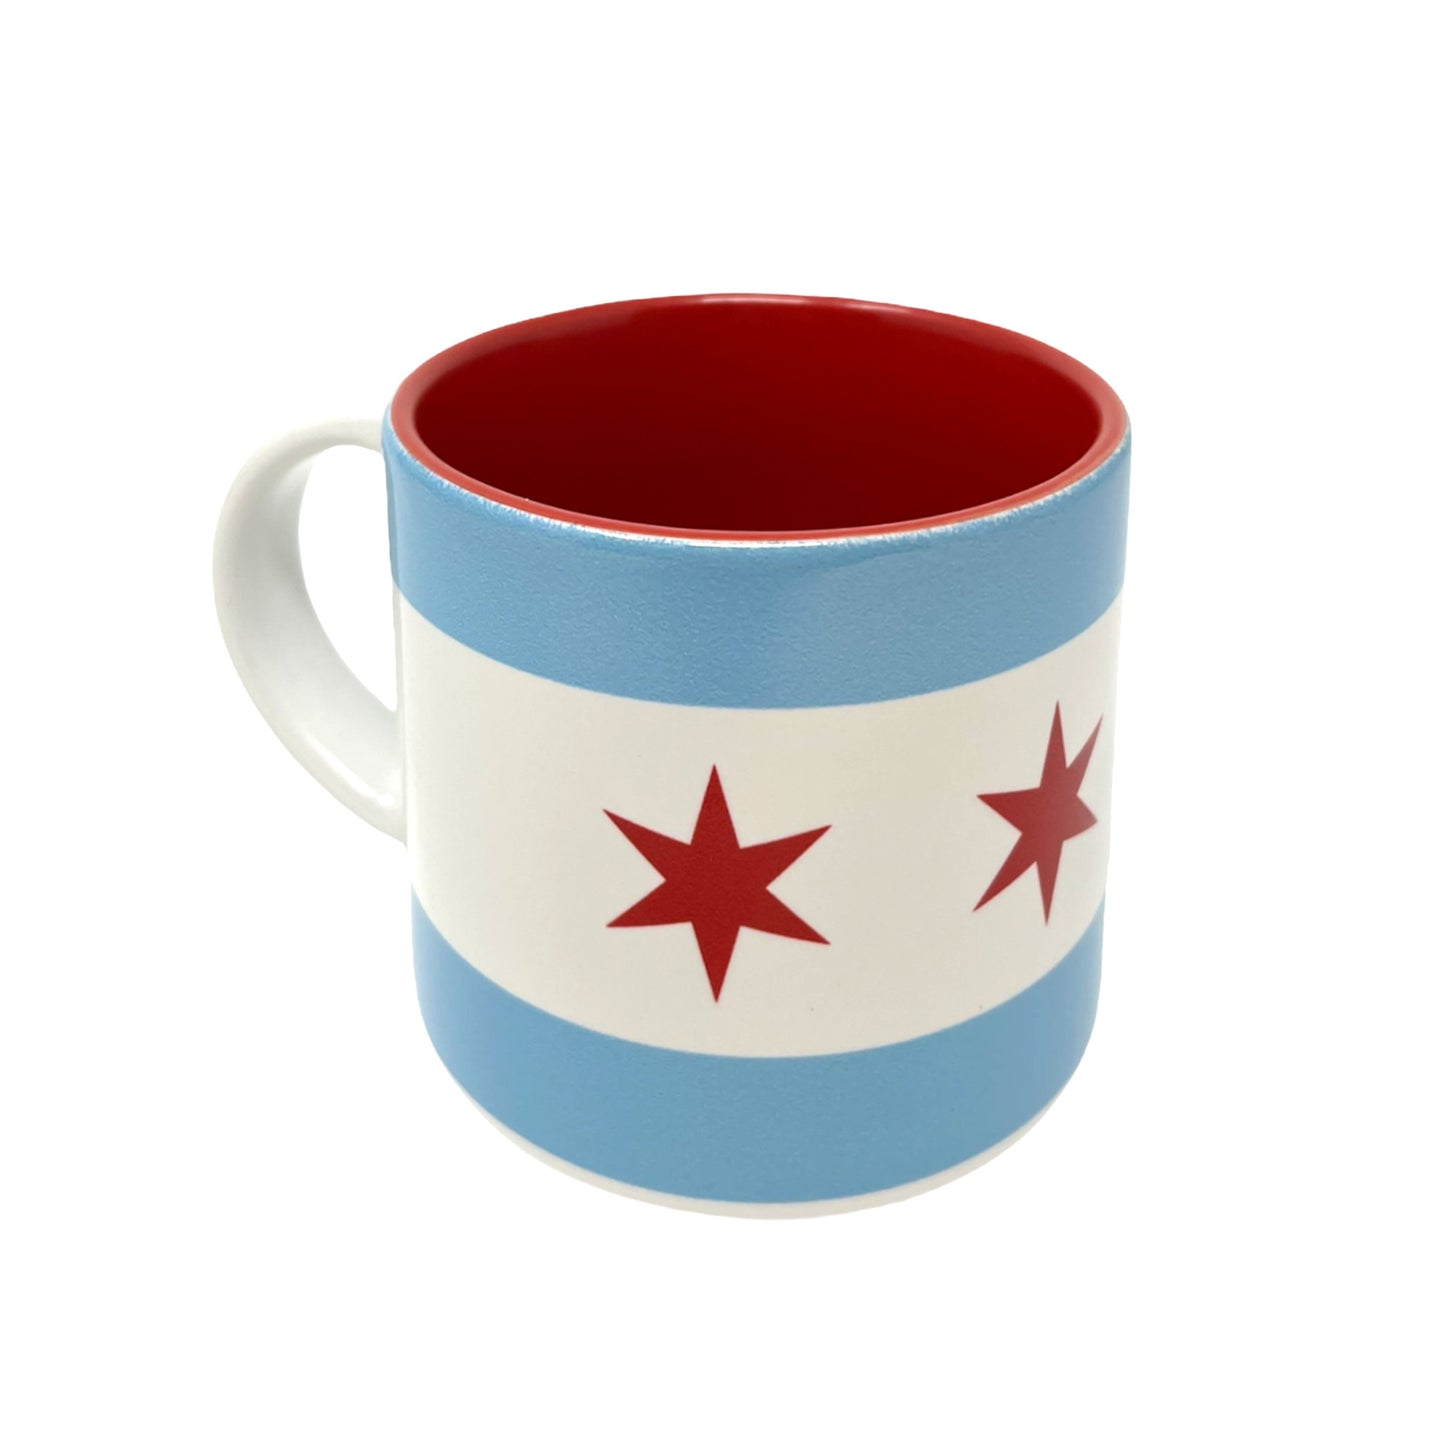 Chicago Flag Mug